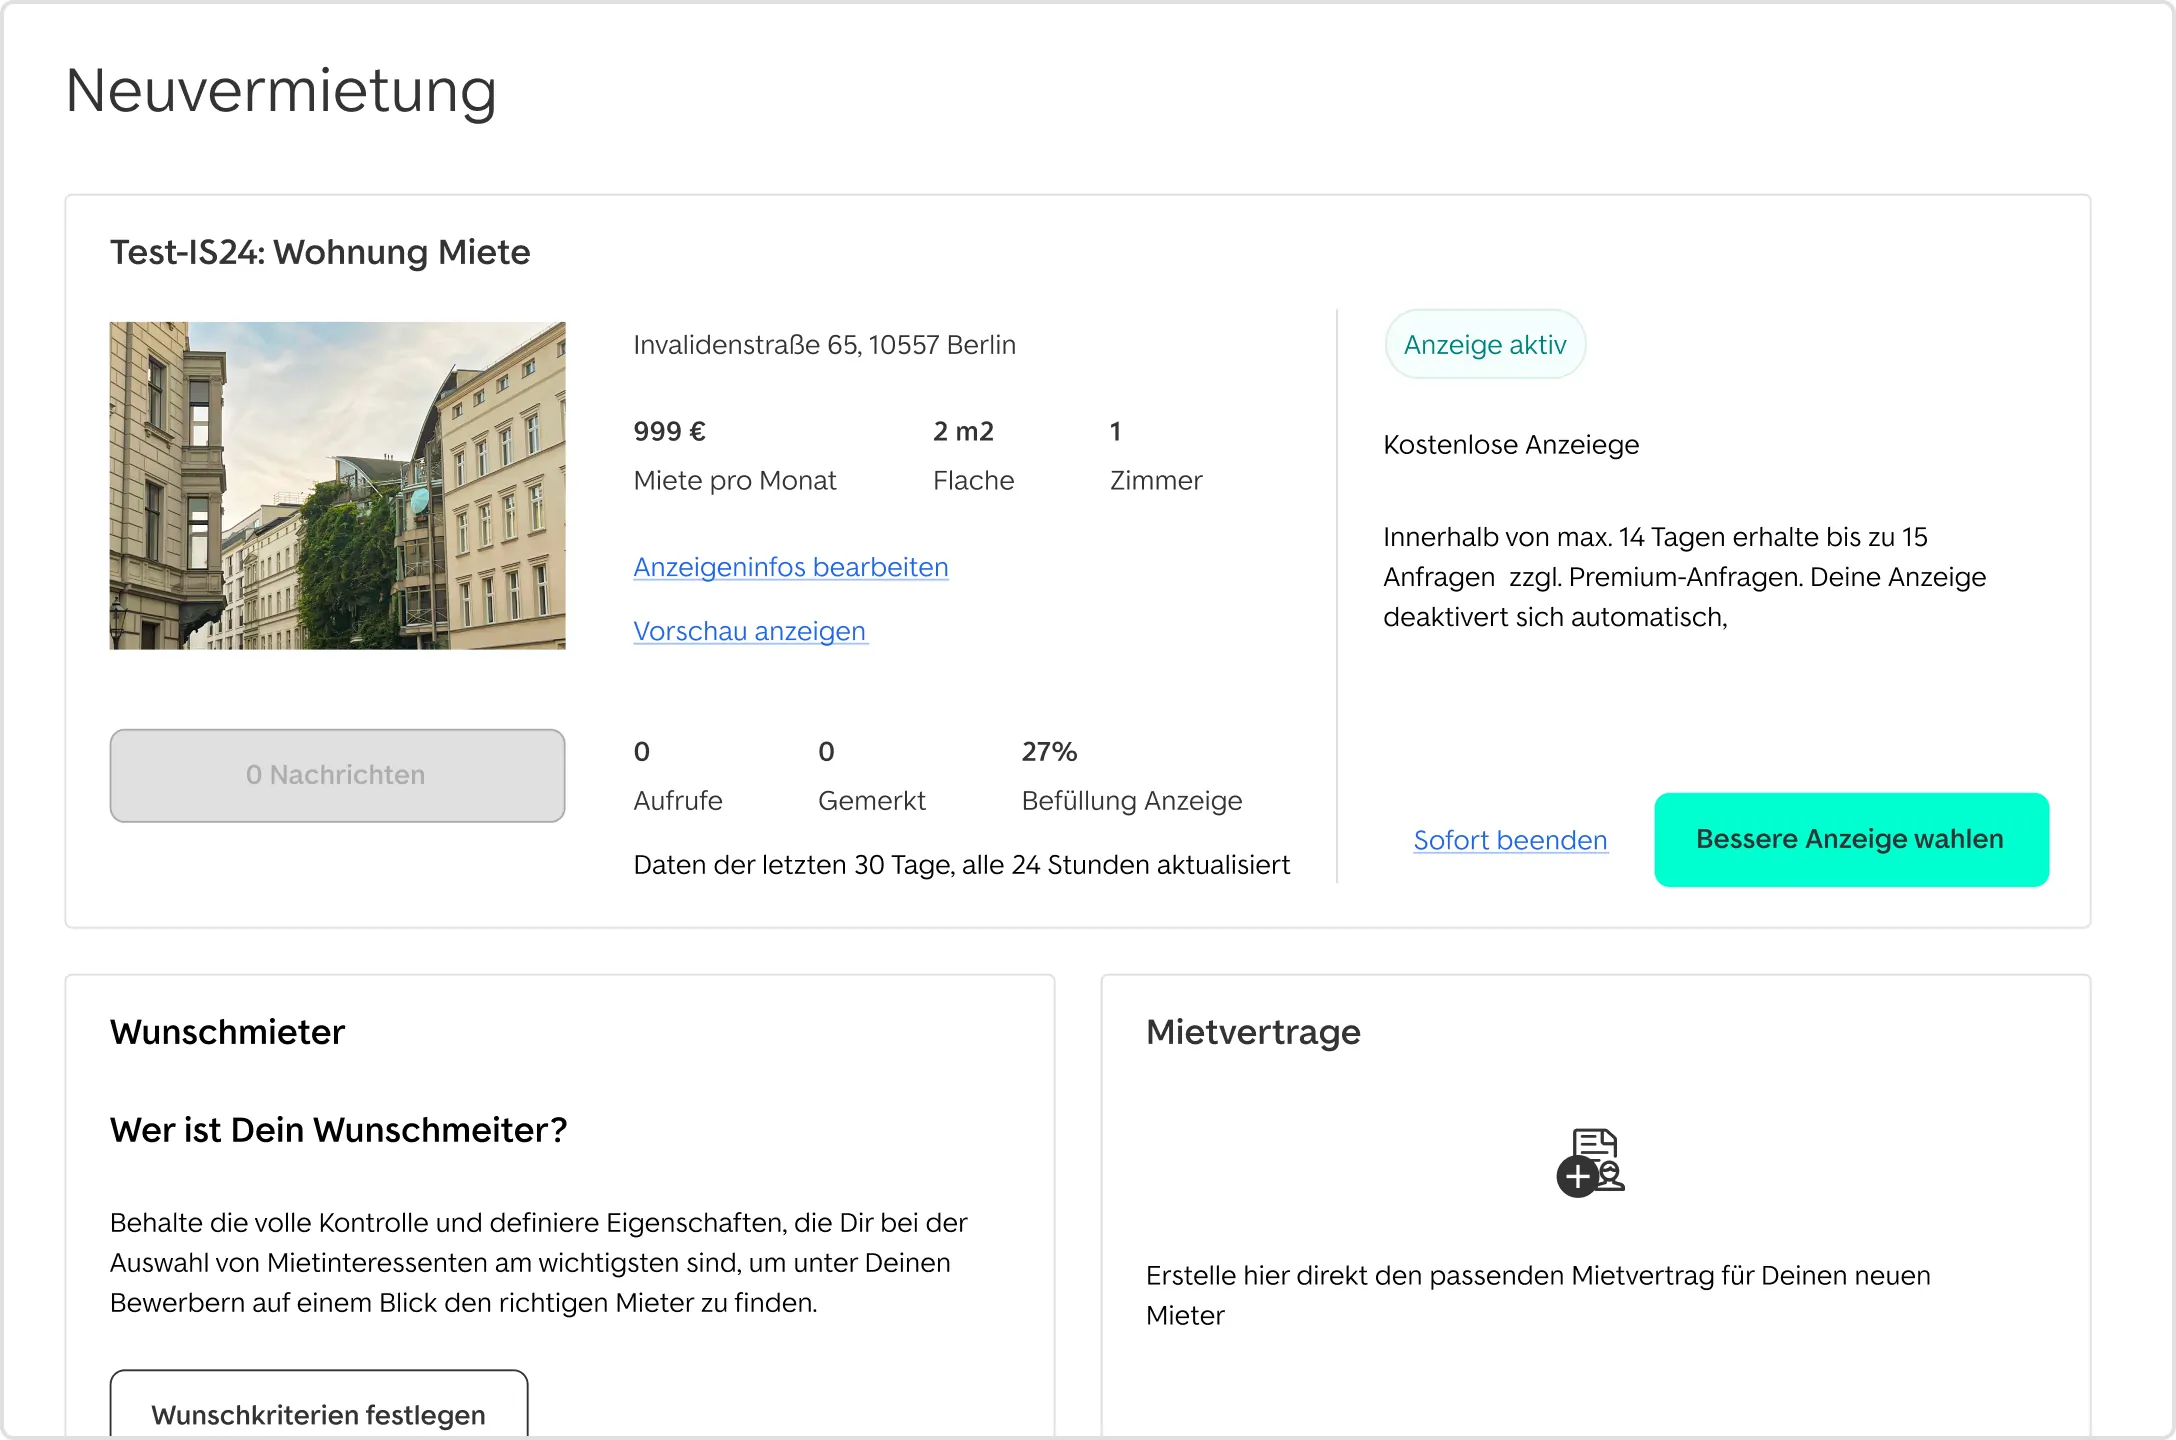 Screenshot der digitalen Immobilienverwaltungs Software Vermietet.de auf welchem das Dashboard zur Neuvermietung zu sehen ist.